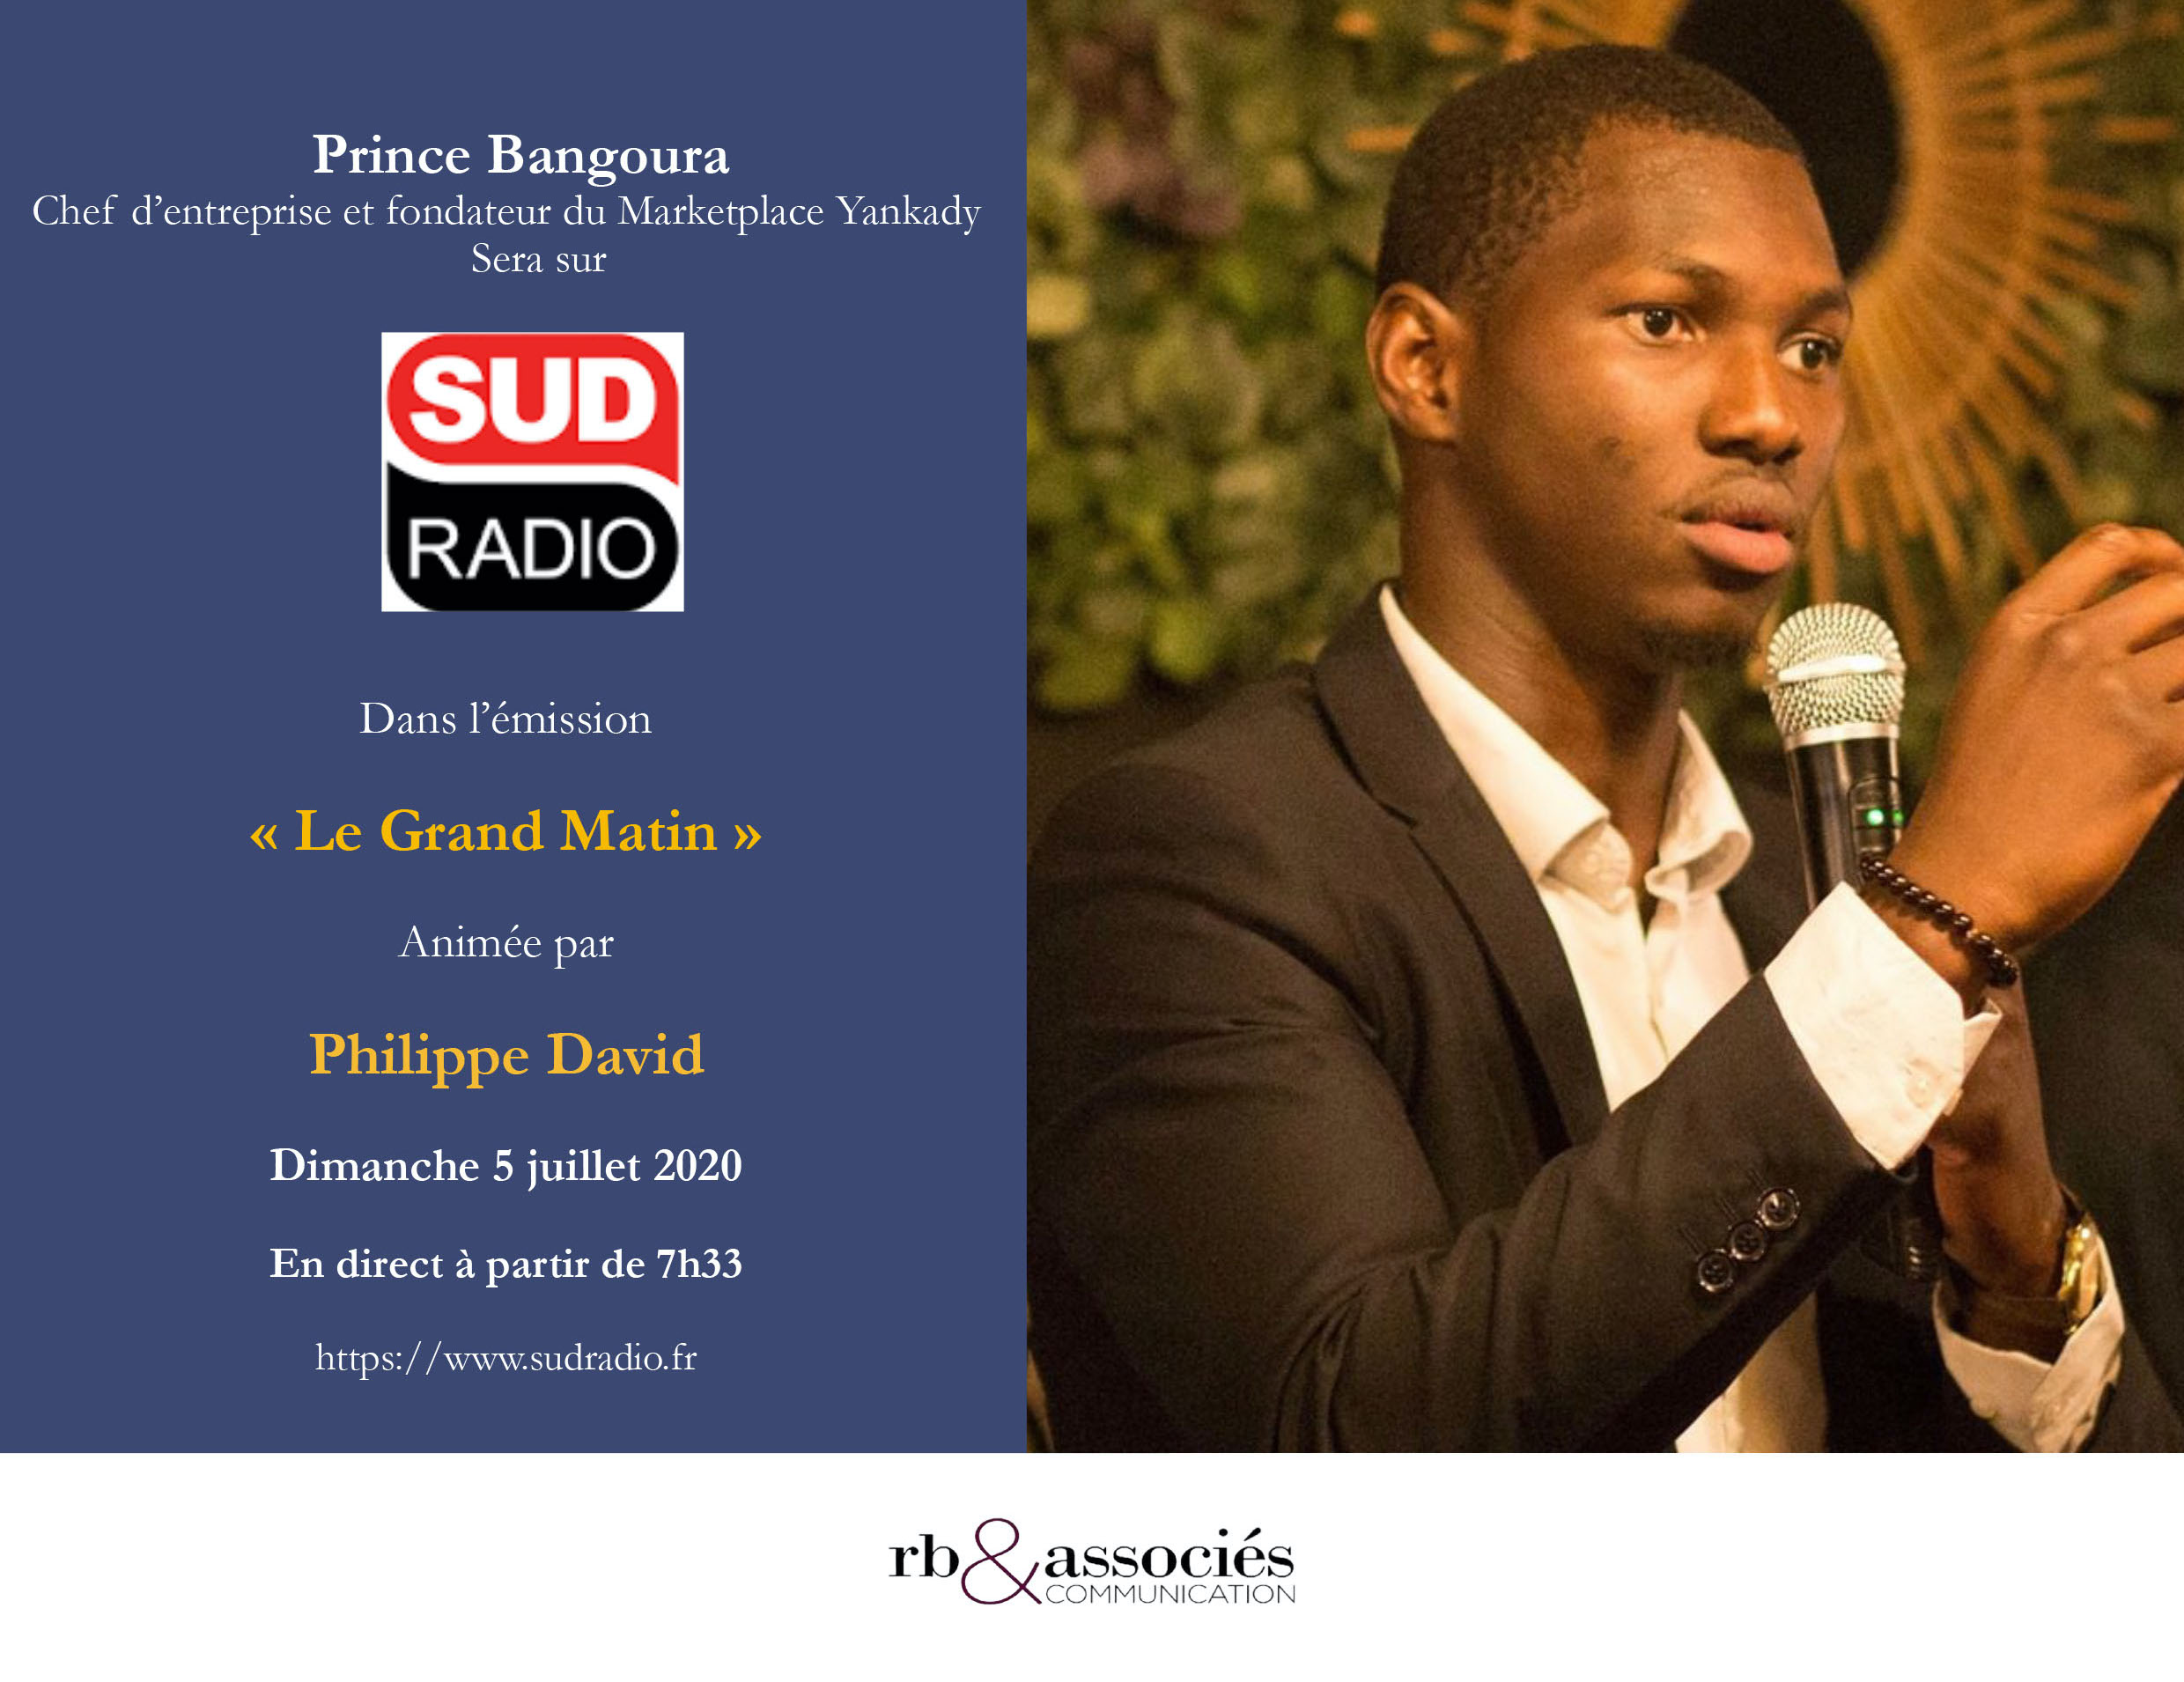 Prince Bangoura fondateur de la marketplace Yankady sera sur Sud radio dans l’émission « Le Grand Matin »